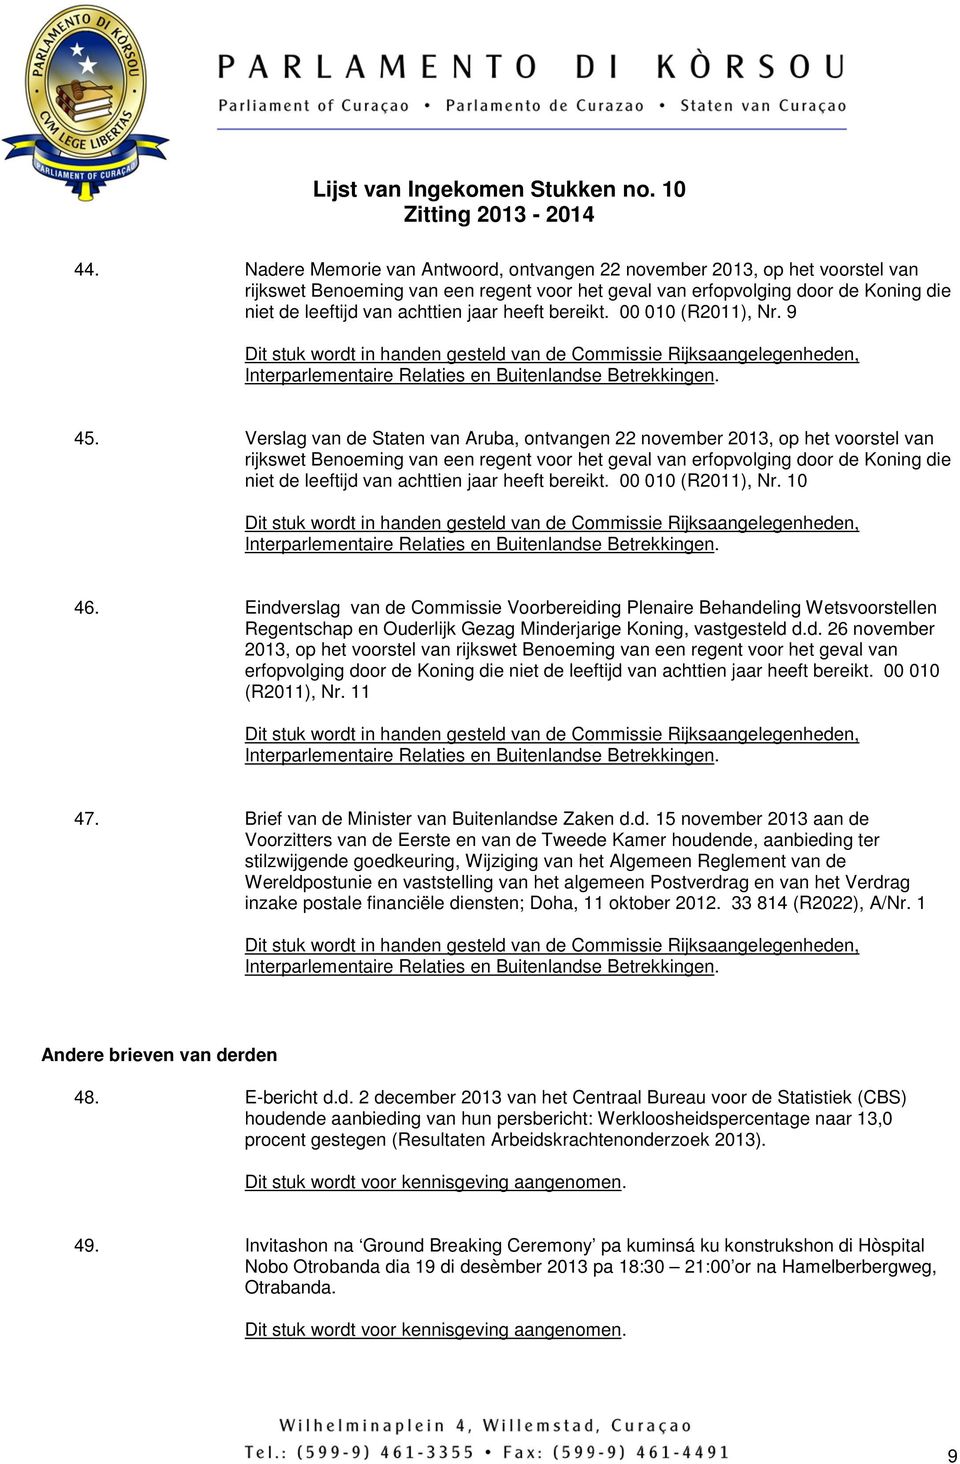 Verslag van de Staten van Aruba, ontvangen 22 november 2013, op het voorstel van rijkswet Benoeming van een regent voor het geval van erfopvolging door de Koning die niet de leeftijd van achttien